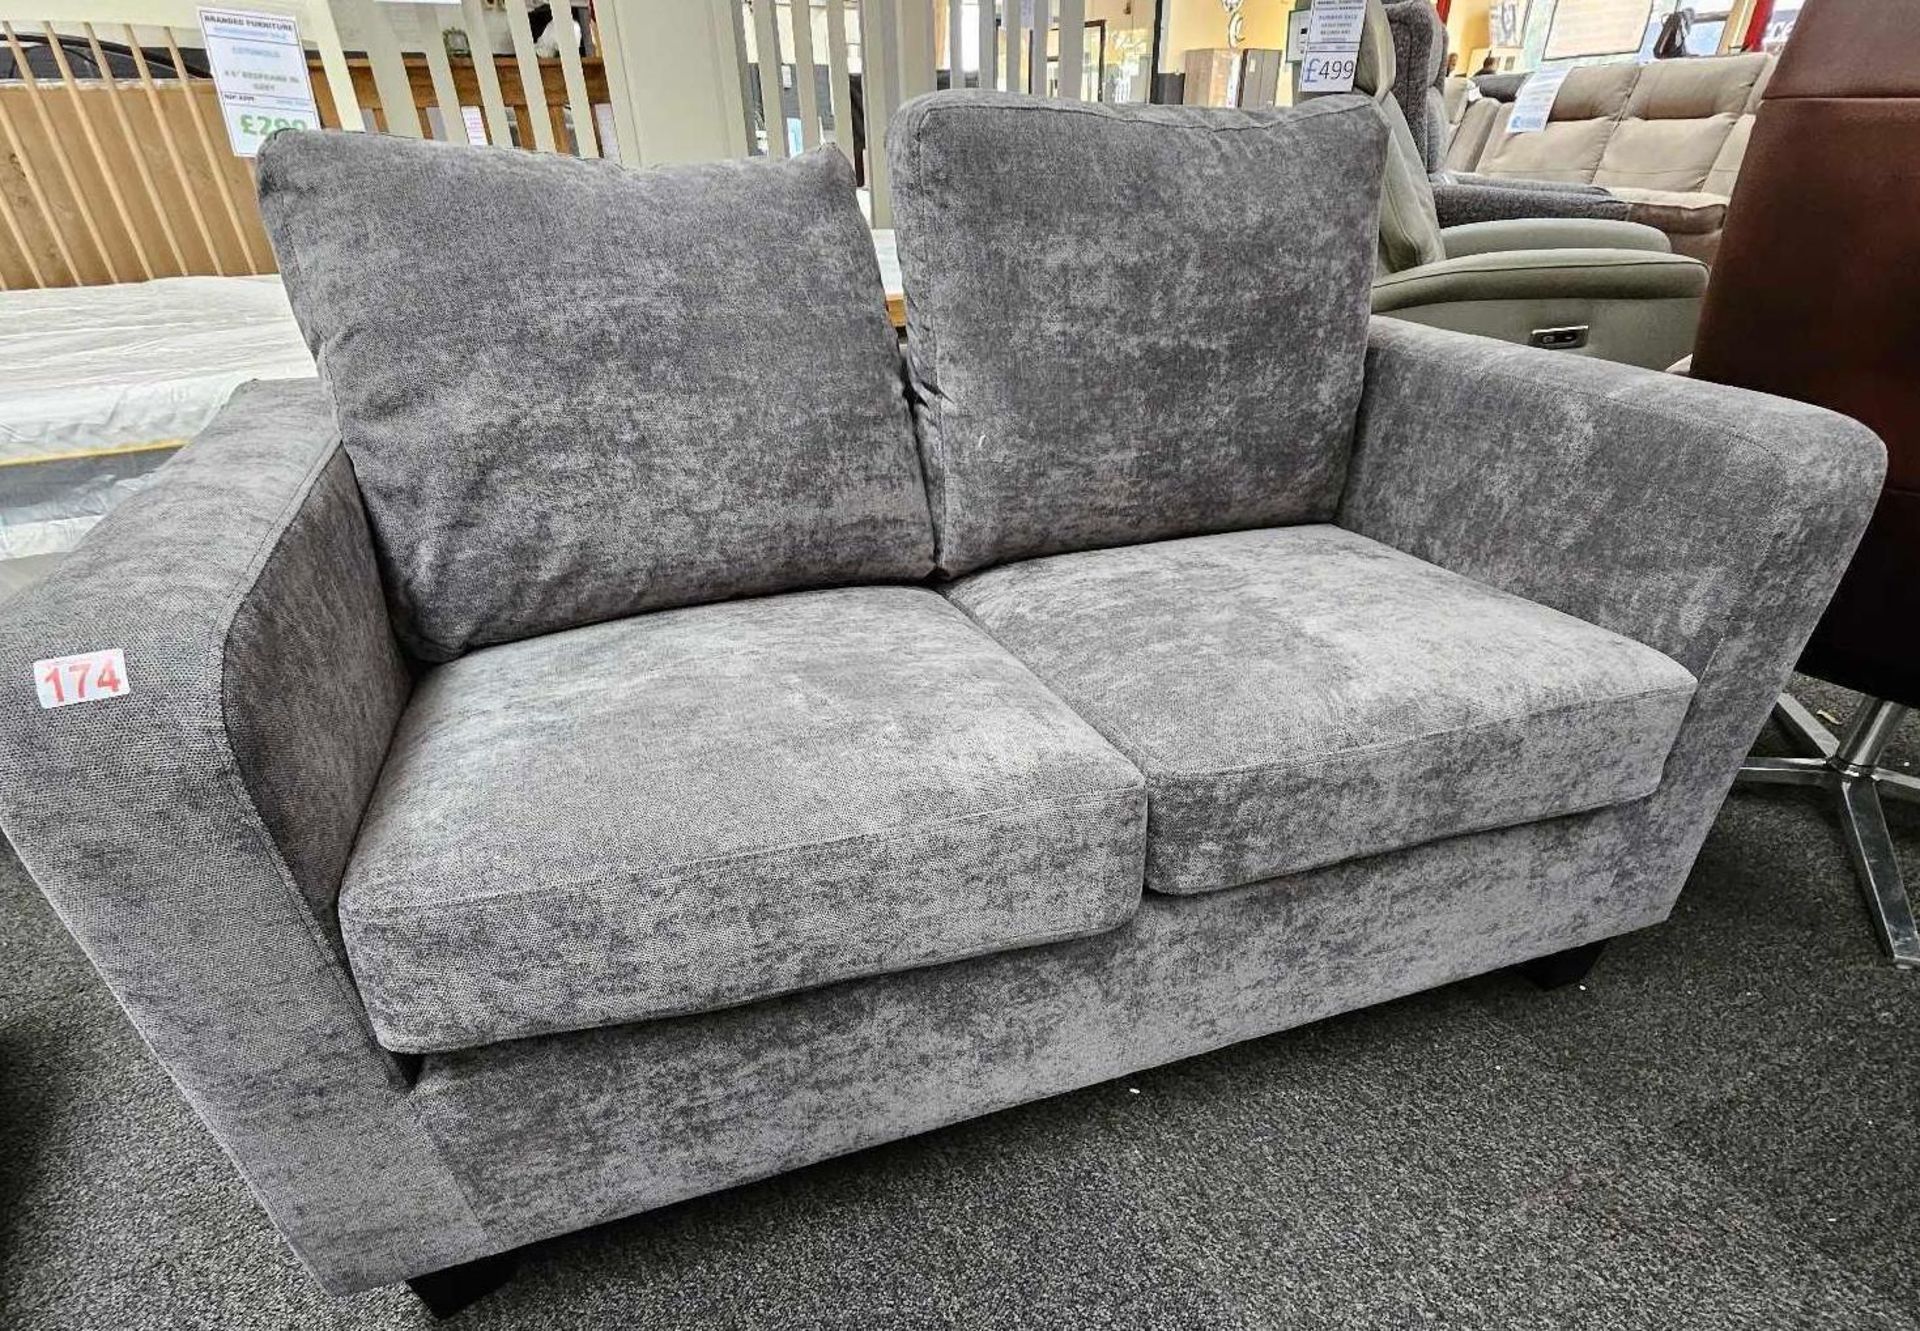 *EX DISPLAY* Kensington 2 seater sofa in grey.